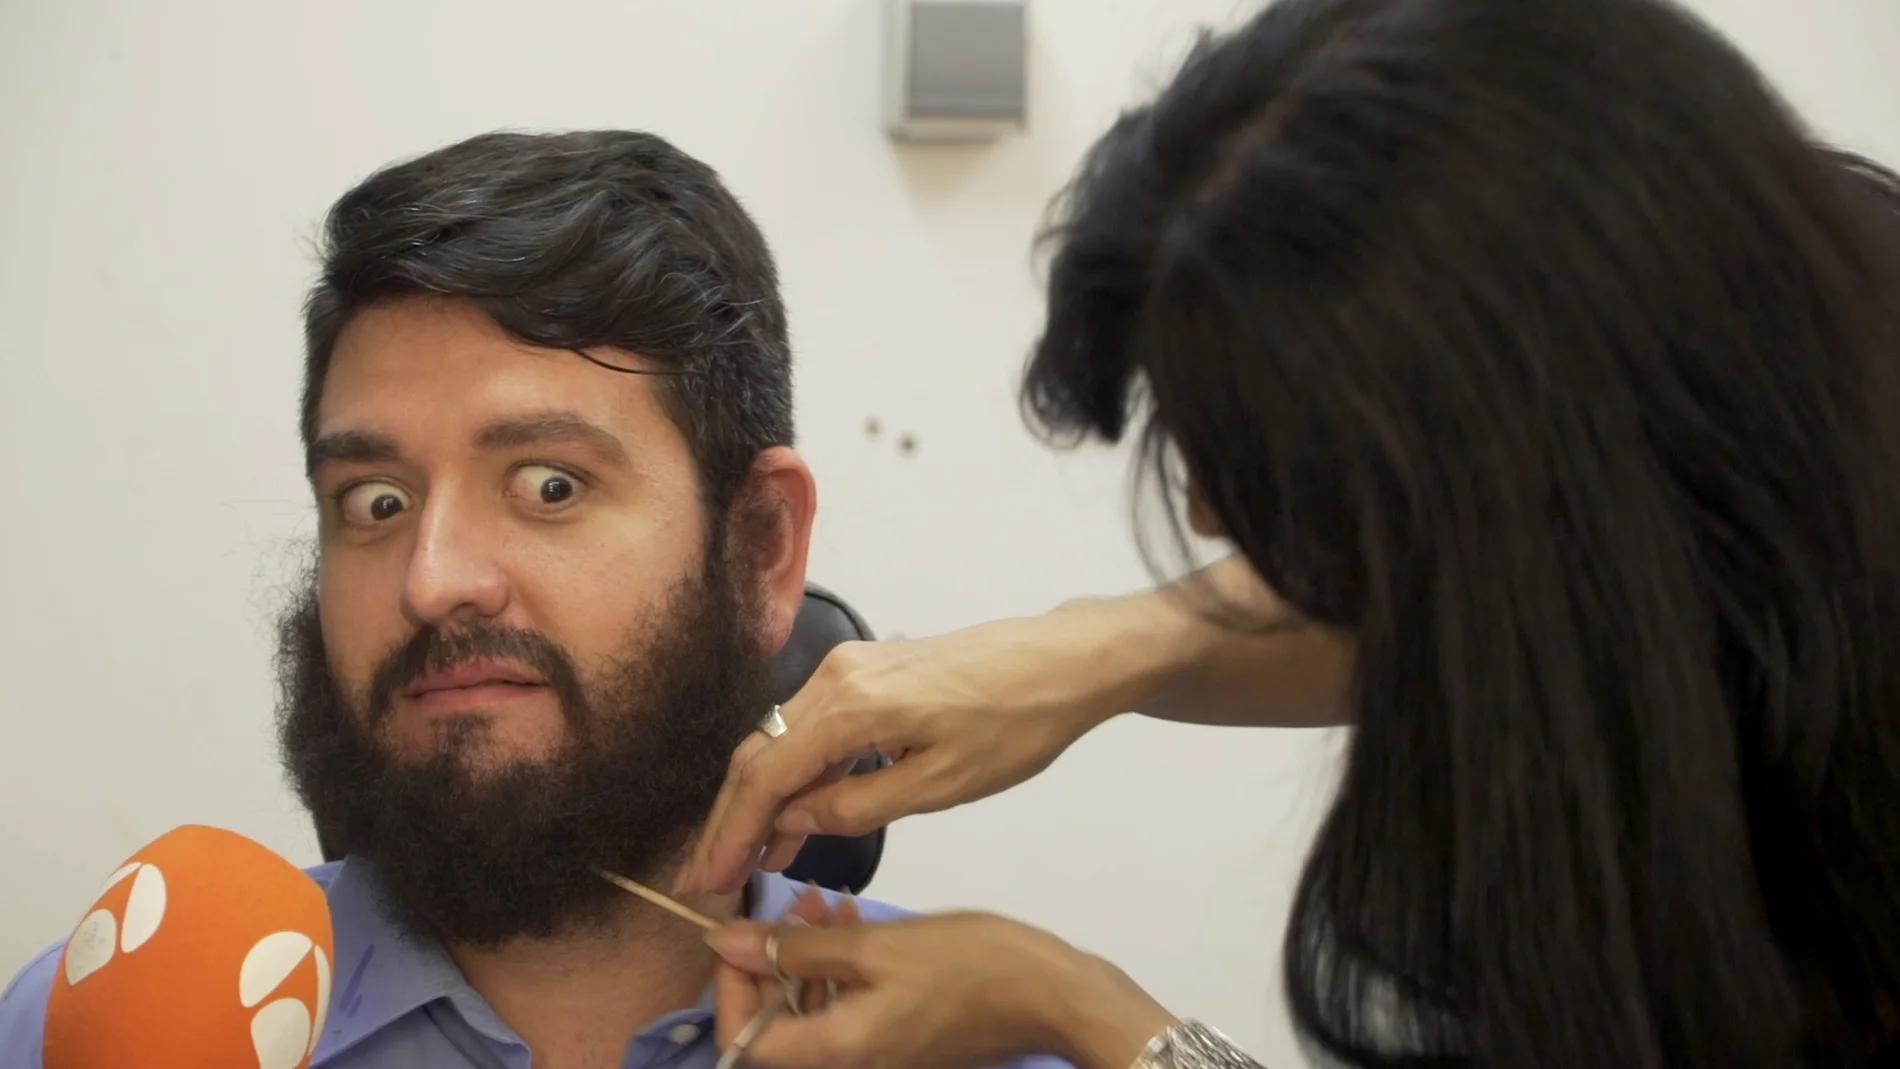 El drama de la barba de Manu Sánchez: "Ahora me veo raro"